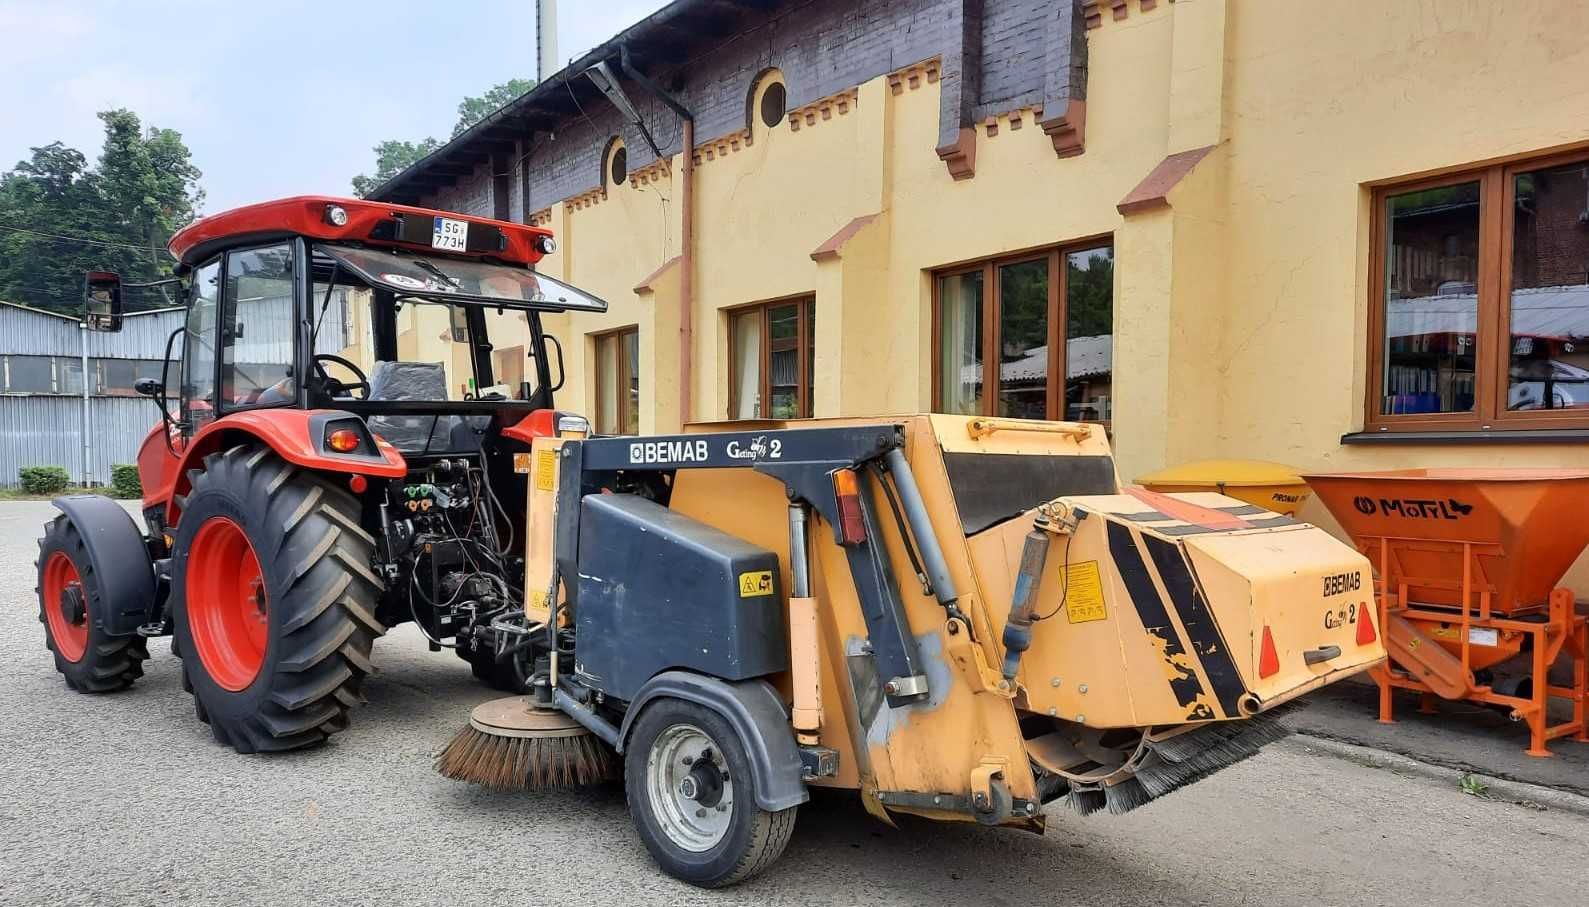 Broddway Bemab Pożycz wynajmij zamiatarka ciągnik traktor zamiata dróg